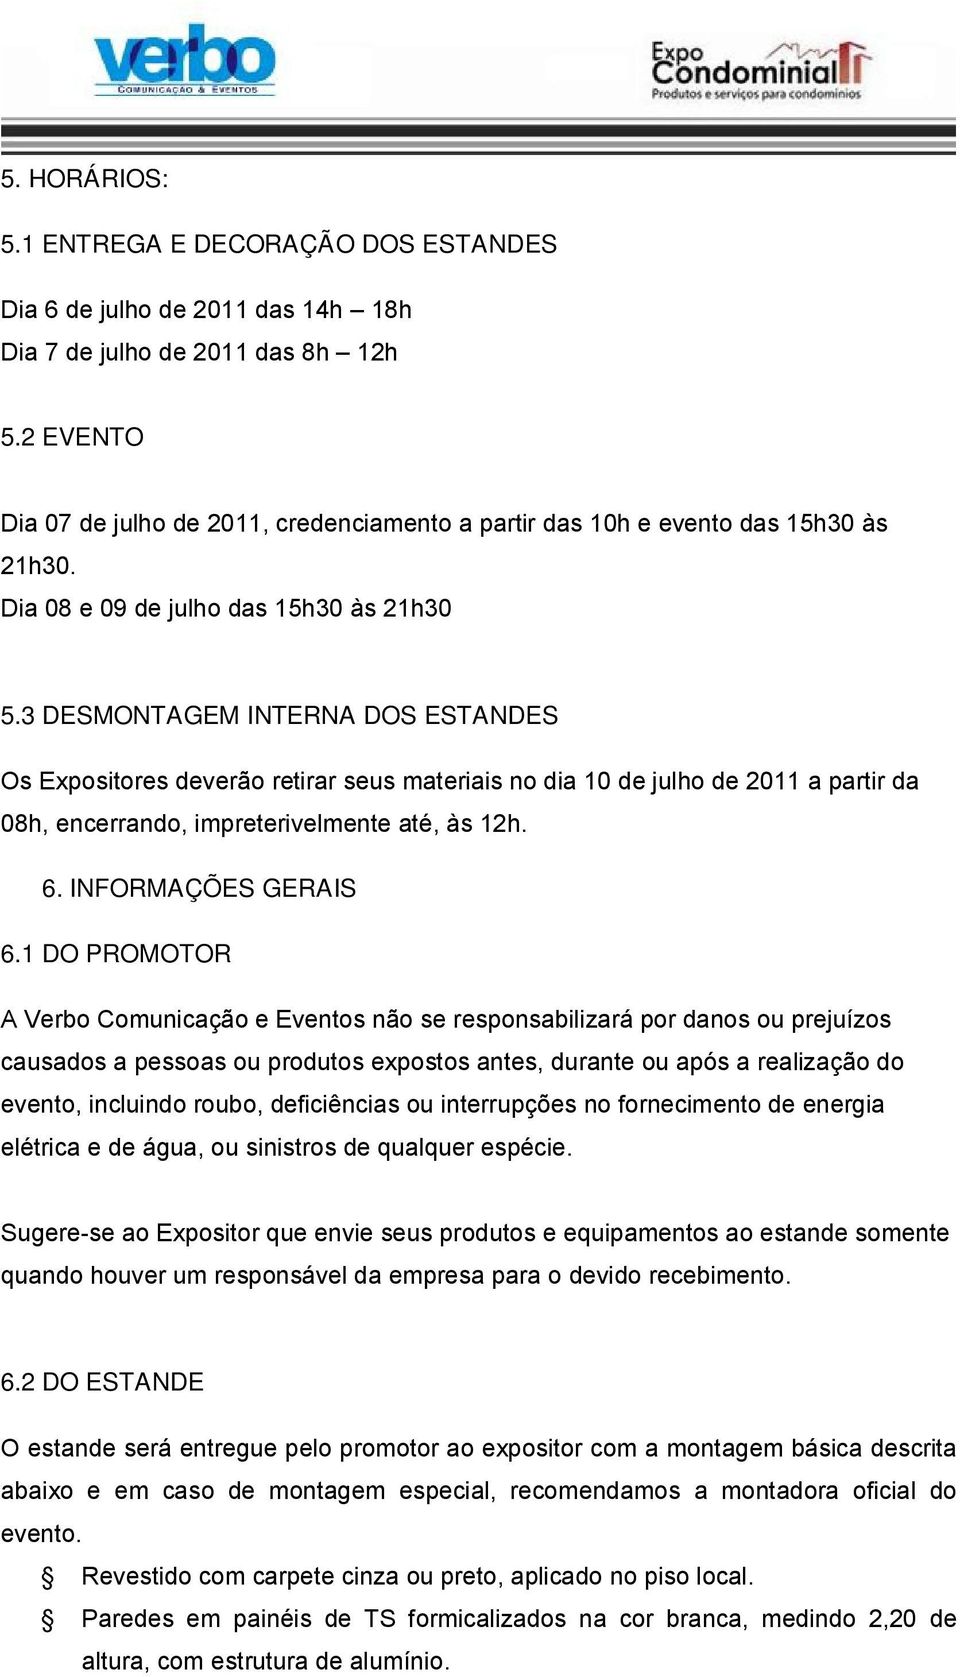 3 DESMONTAGEM INTERNA DOS ESTANDES Os Expositores deverão retirar seus materiais no dia 10 de julho de 2011 a partir da 08h, encerrando, impreterivelmente até, às 12h. 6. INFORMAÇÕES GERAIS 6.